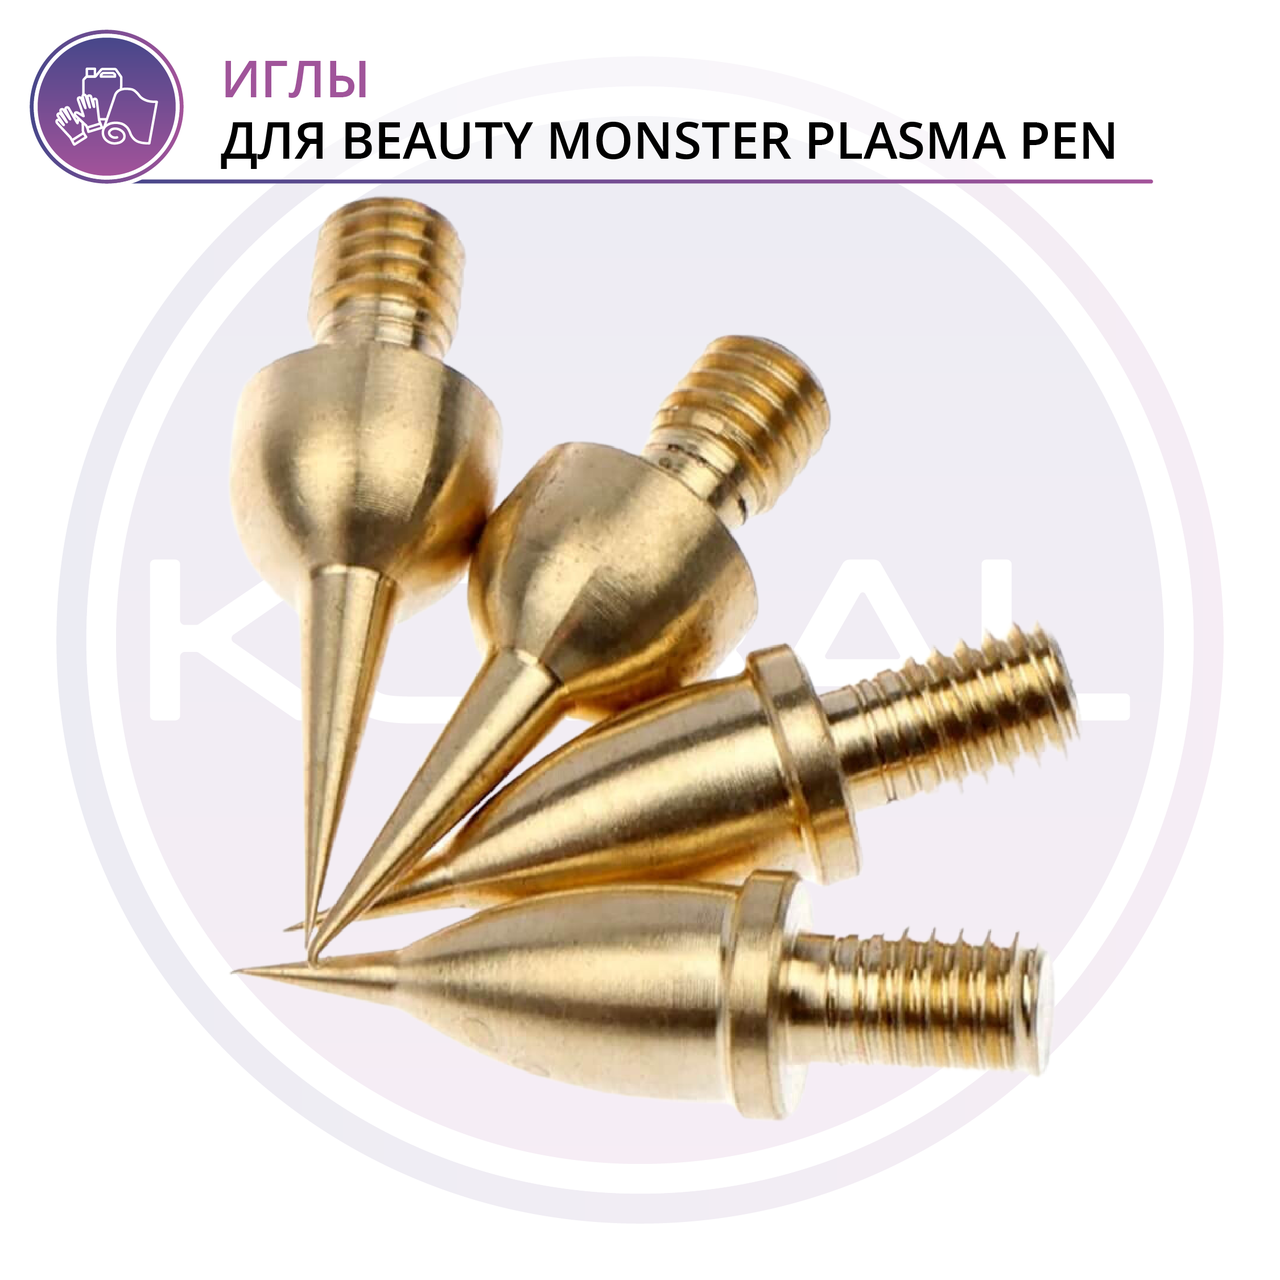 Иглы для beauty monster plasma pen